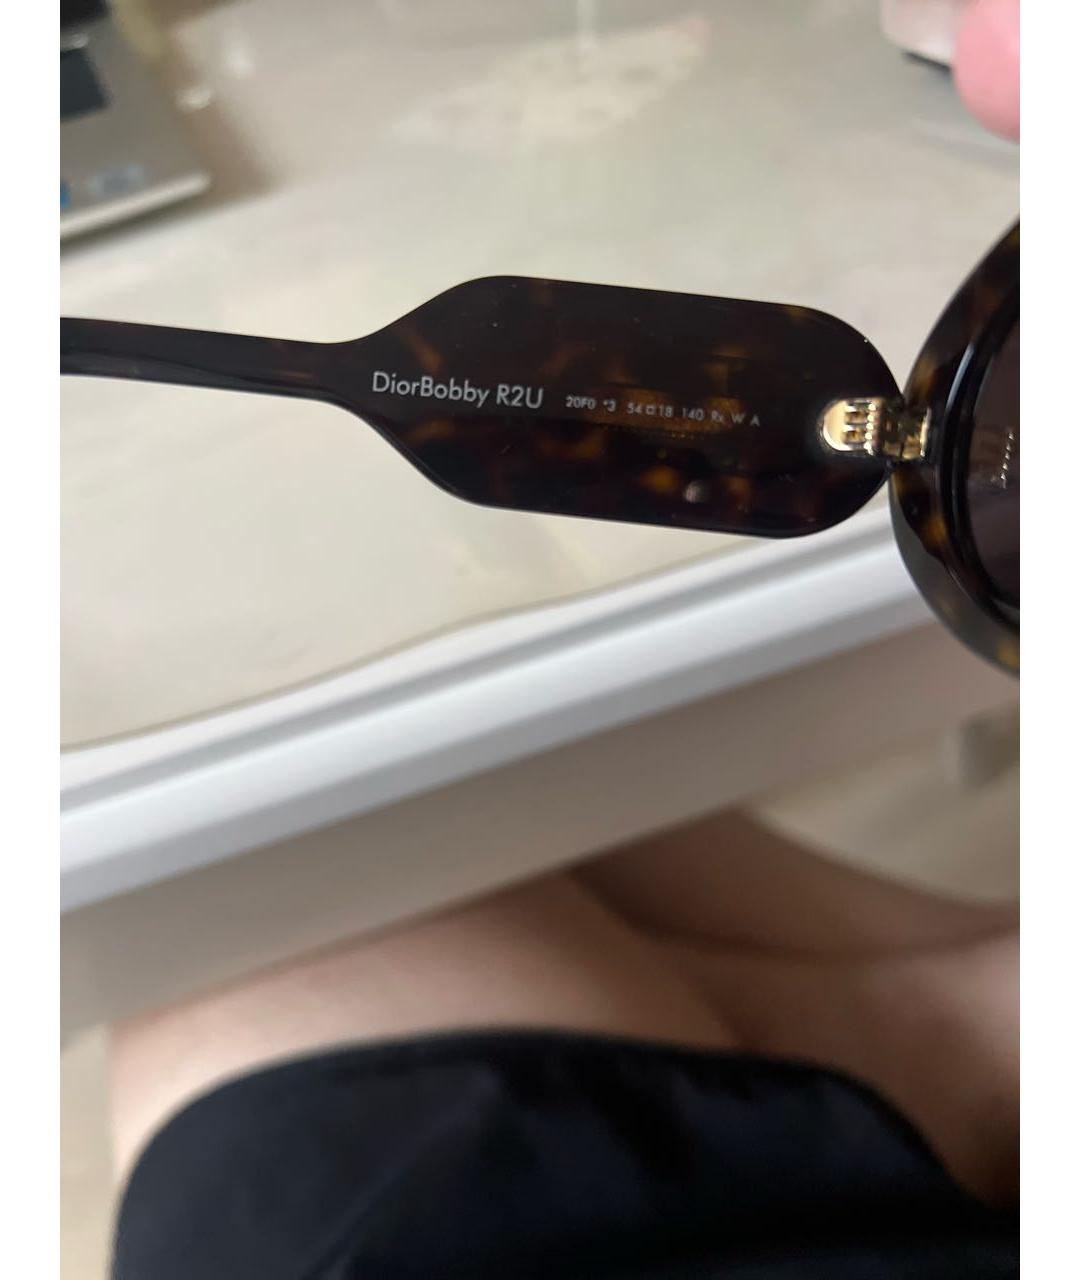 CHRISTIAN DIOR PRE-OWNED Коричневые пластиковые солнцезащитные очки, фото 6